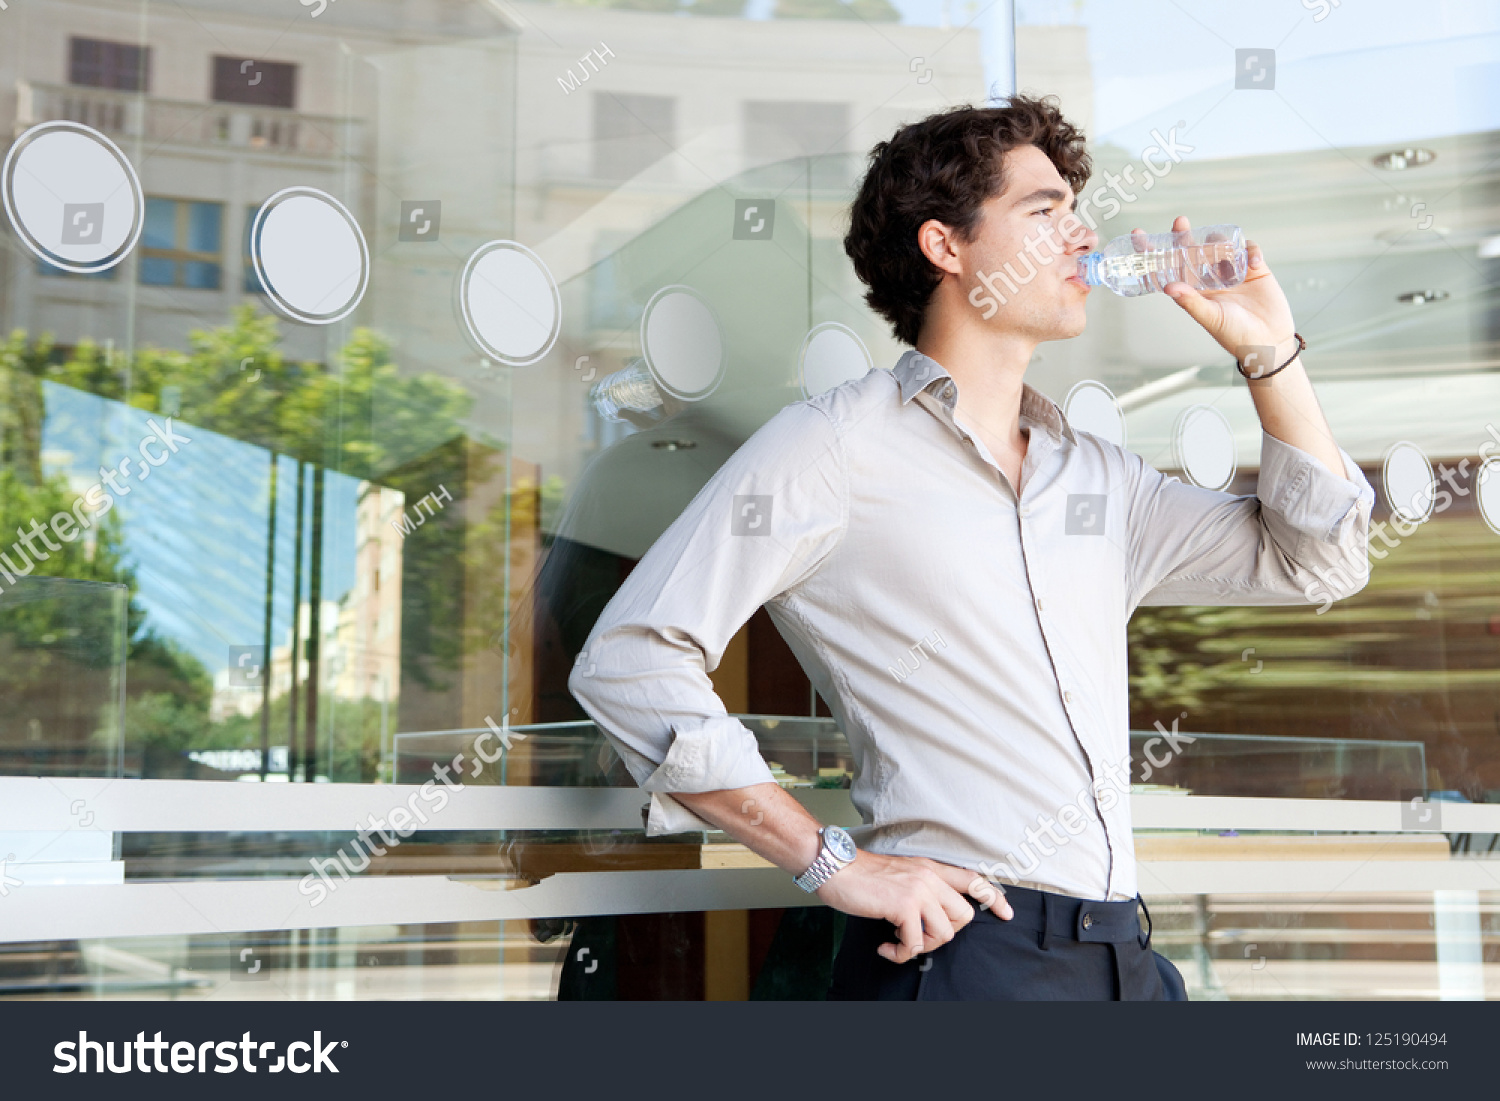 Питьевая вода для офиса. Вода в офисе. Мужчина в костюме пьет воду. Бизнесмен пьет воду. Вода для офис стильно.